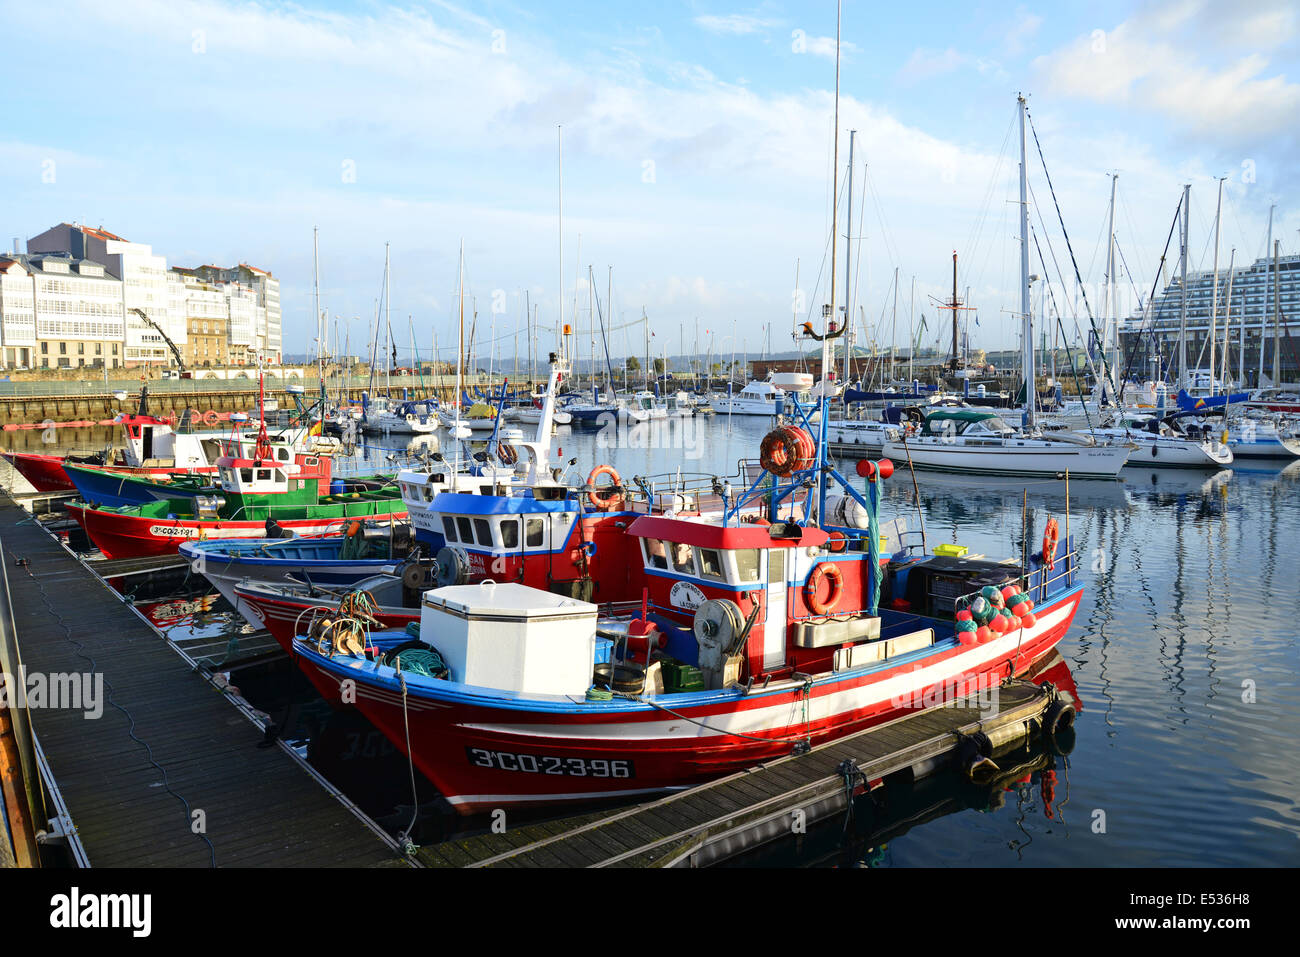 Vistas al puerto, A Coruña, provincia de A Coruña, Galicia, Reino de España Foto de stock